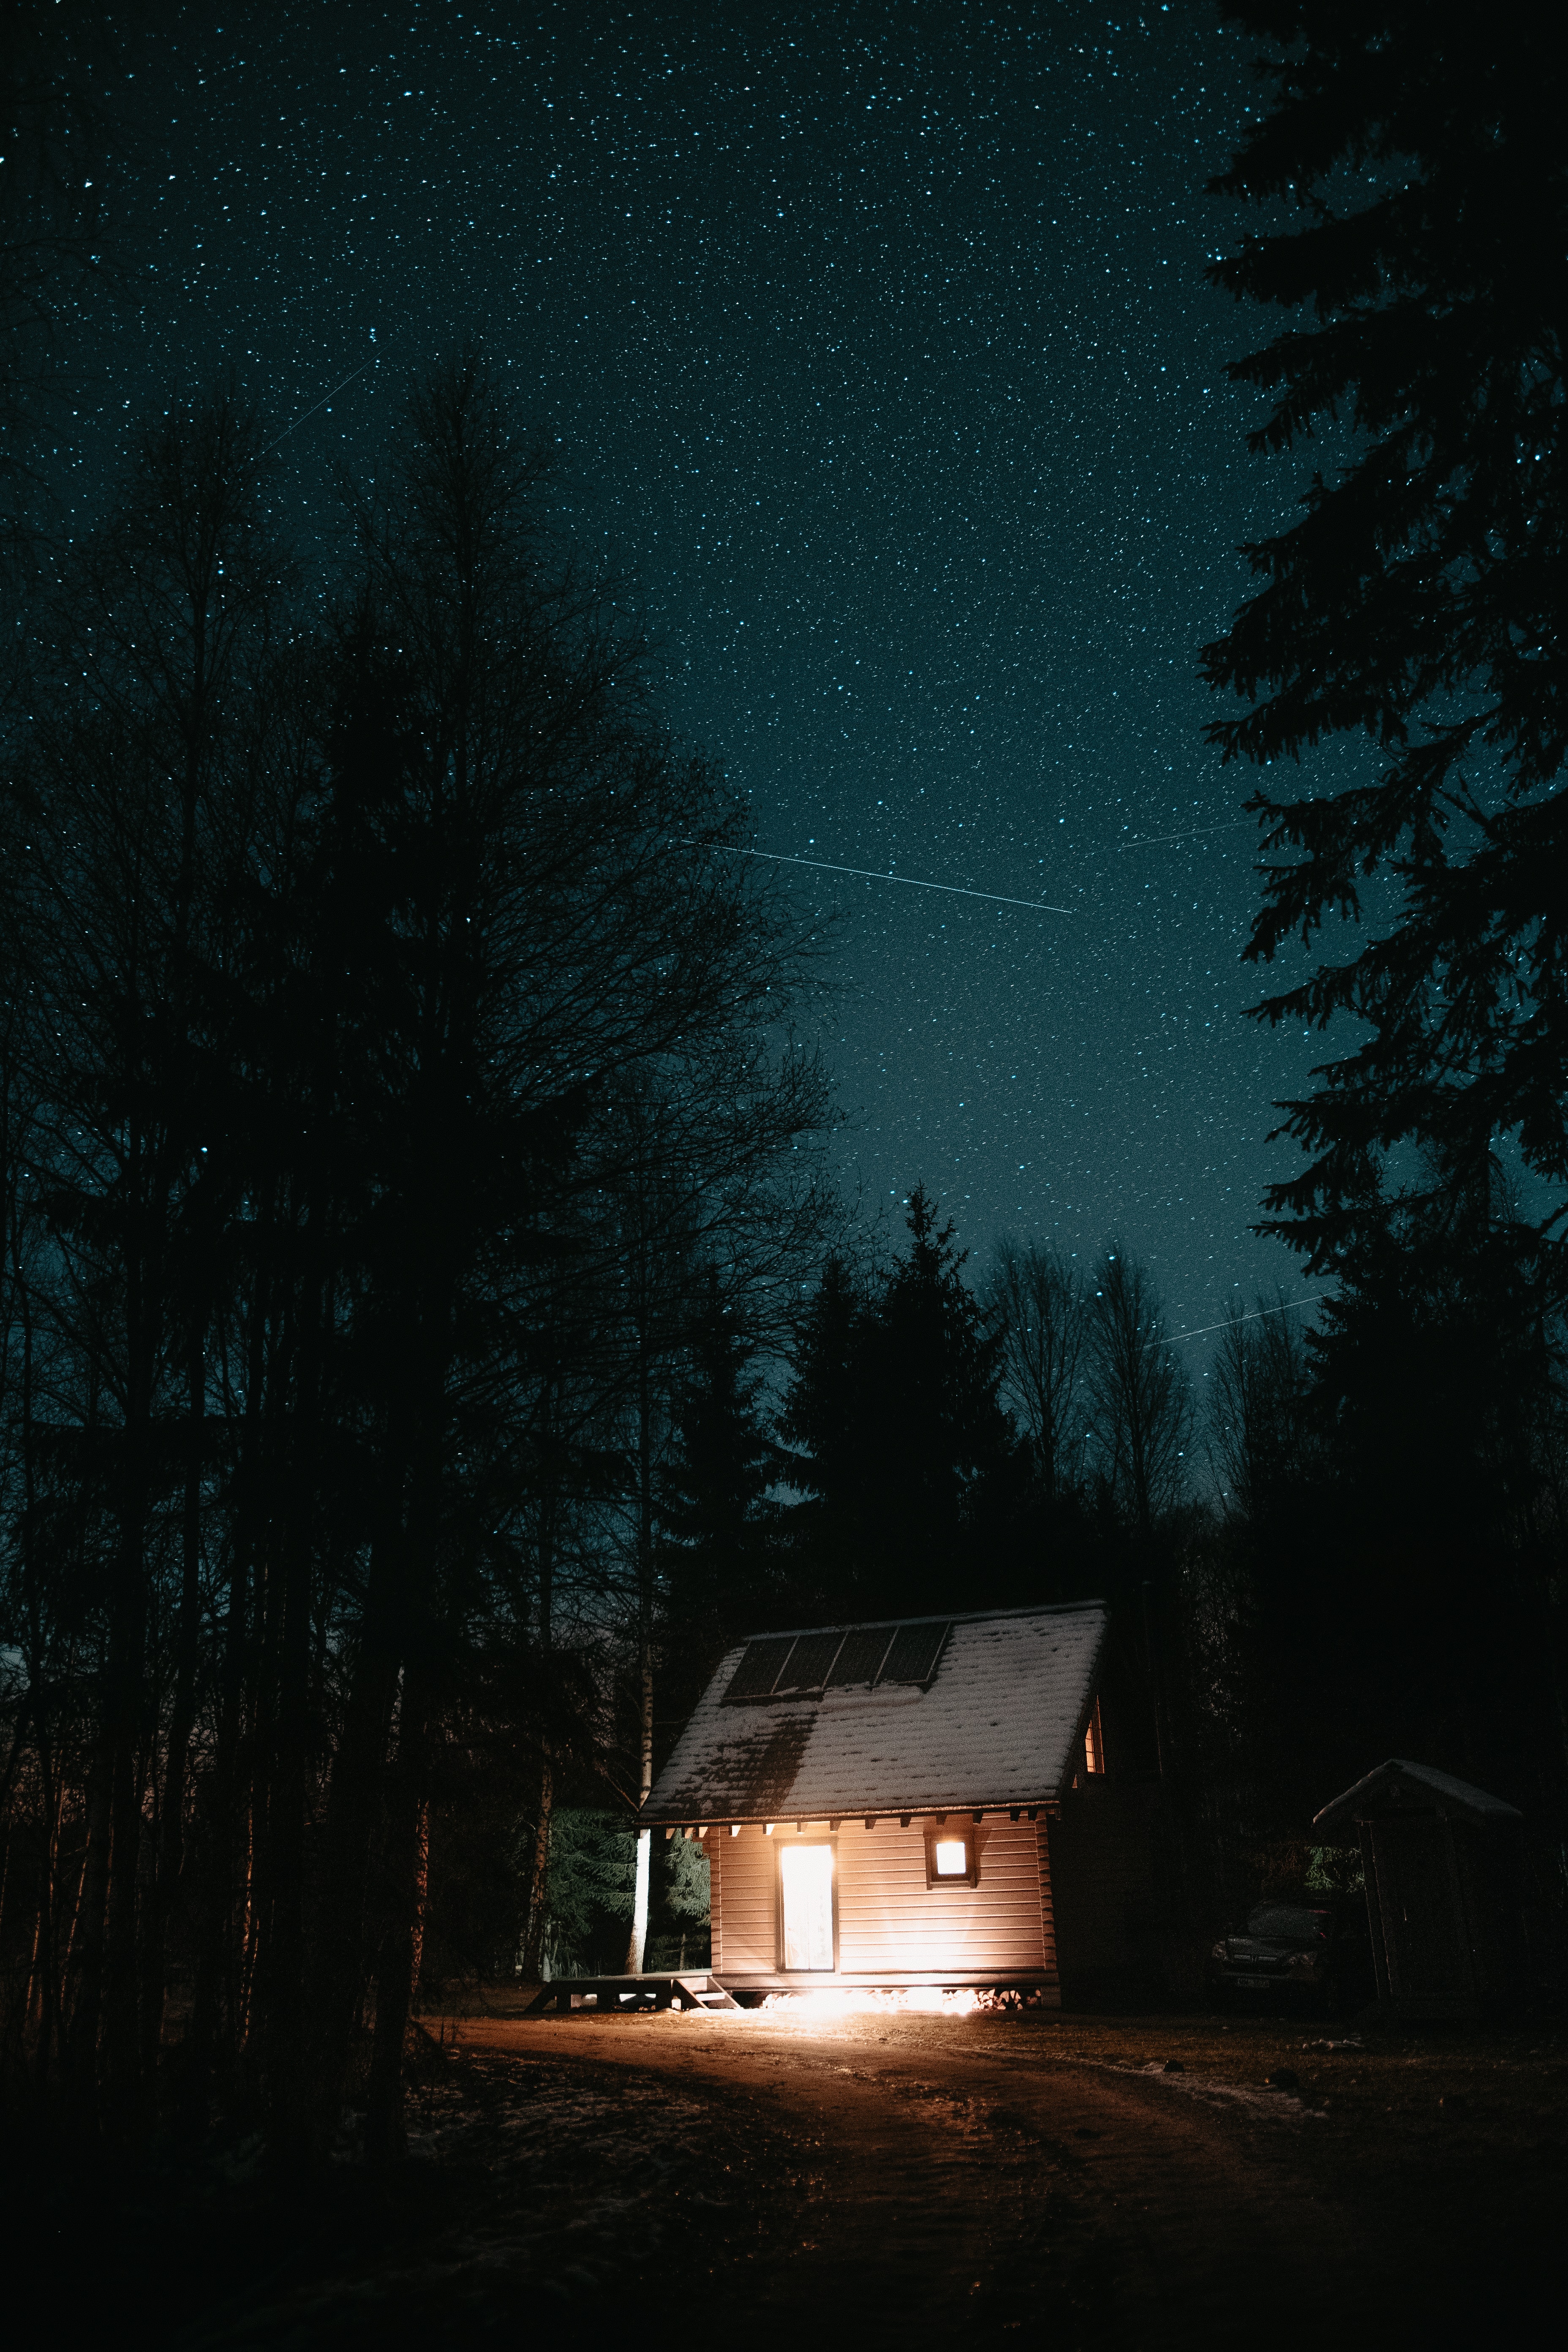 night, darkness, trees, dark, shine, light, starry sky, house wallpaper for mobile